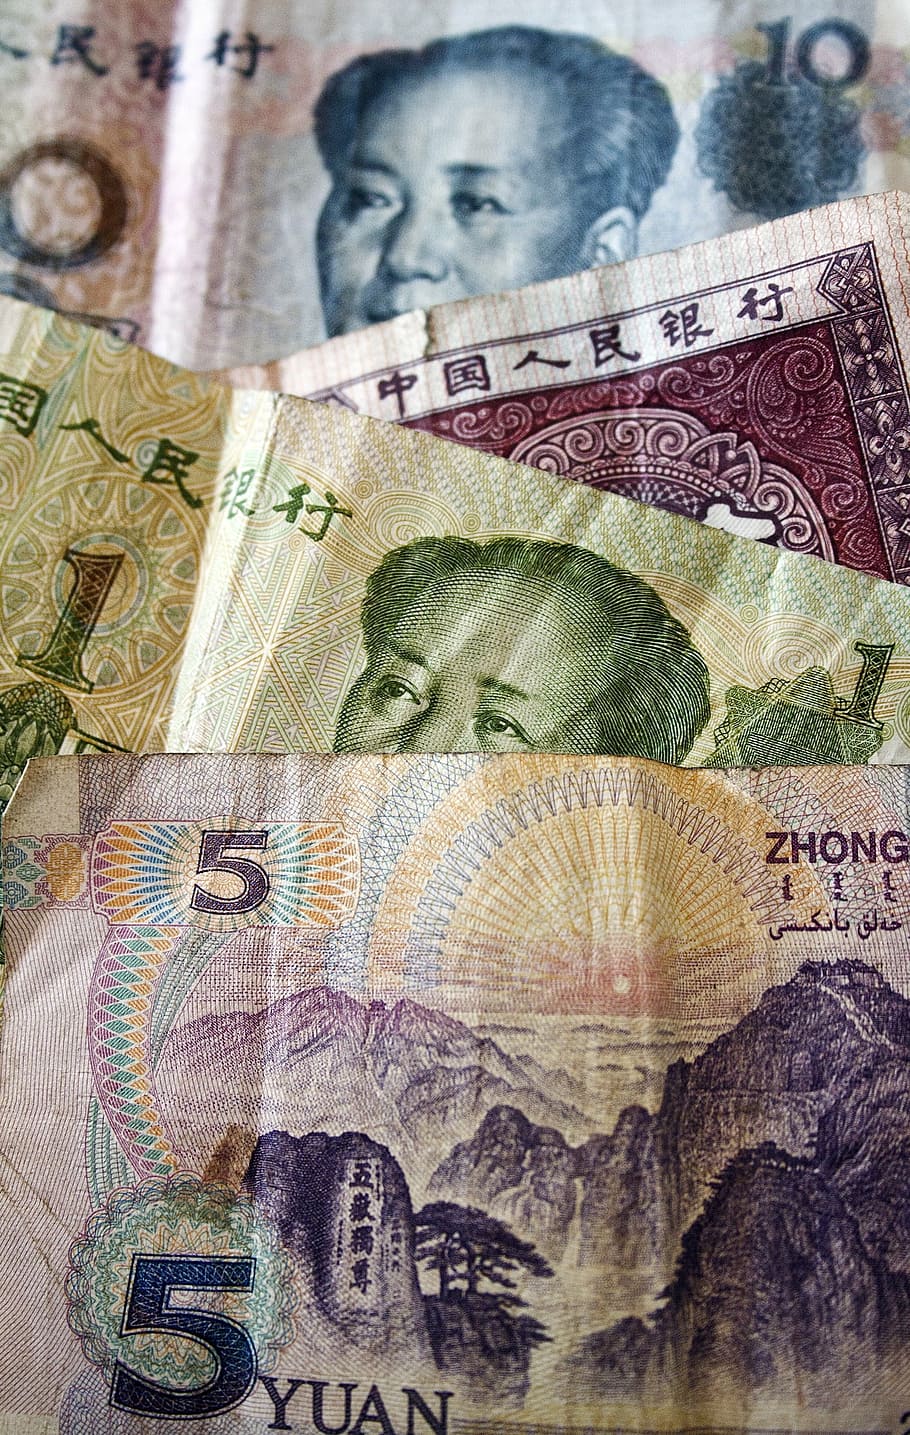 お金, 中国, 毛, 銀行, 財政, 中国の硬貨, 現金, ビジネス, 通貨, 紙幣